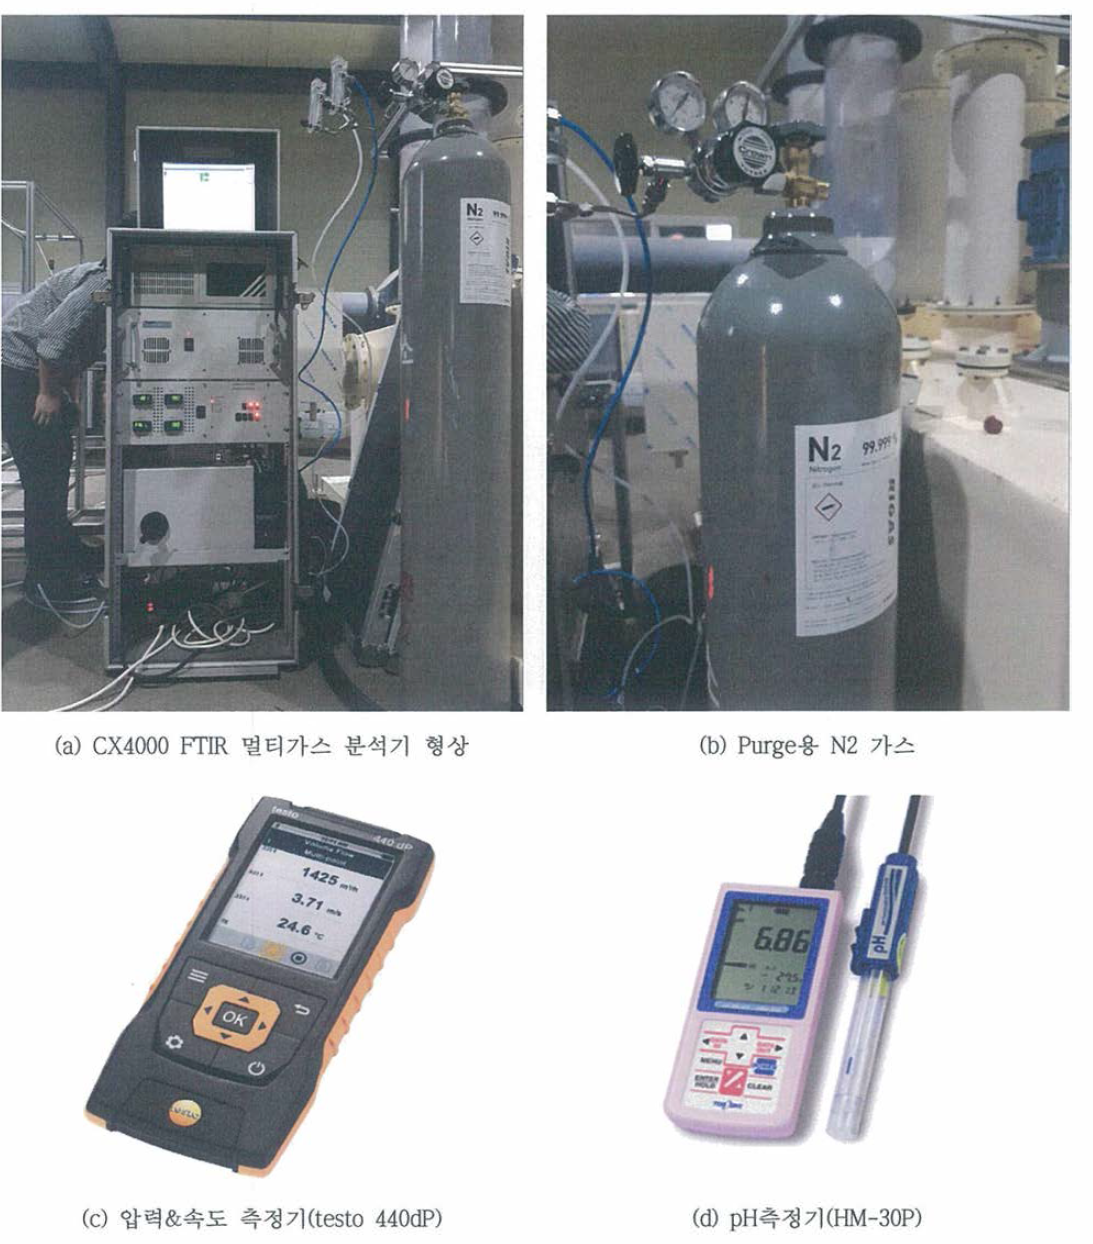 후처리시스템 가스 및 압력, 속도, pH 측정 장비